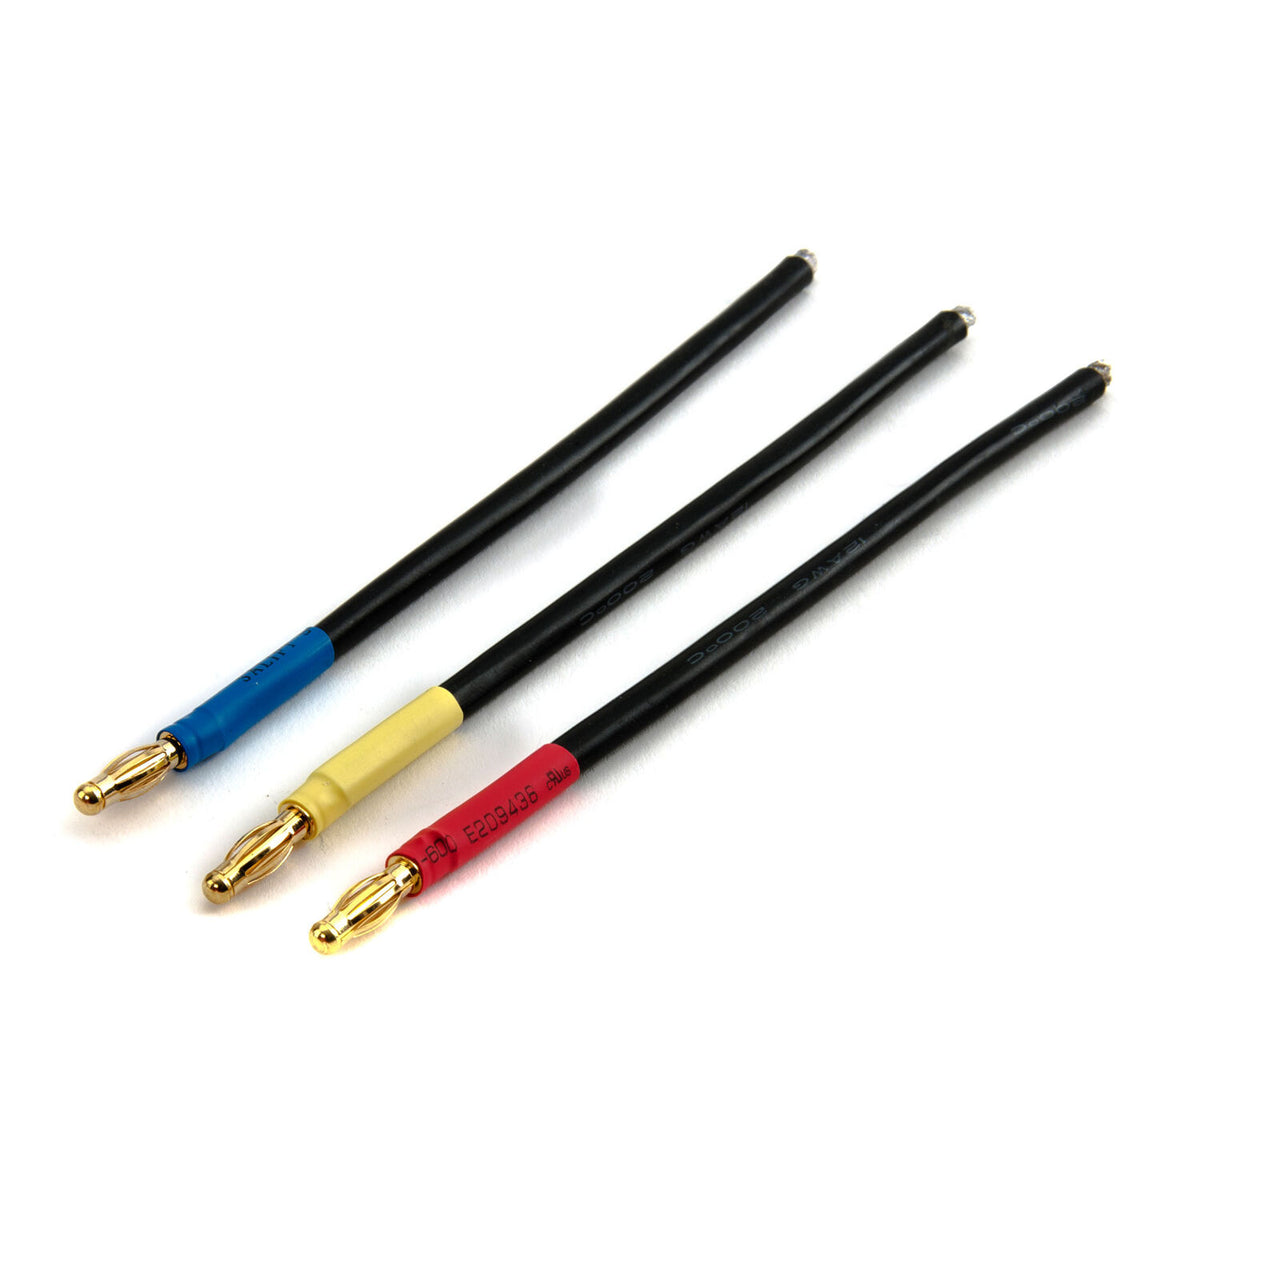 DYNC0137 Juego de cables de motor BL, conector tipo bala de 4 mm, macho, negro/amarillo/org